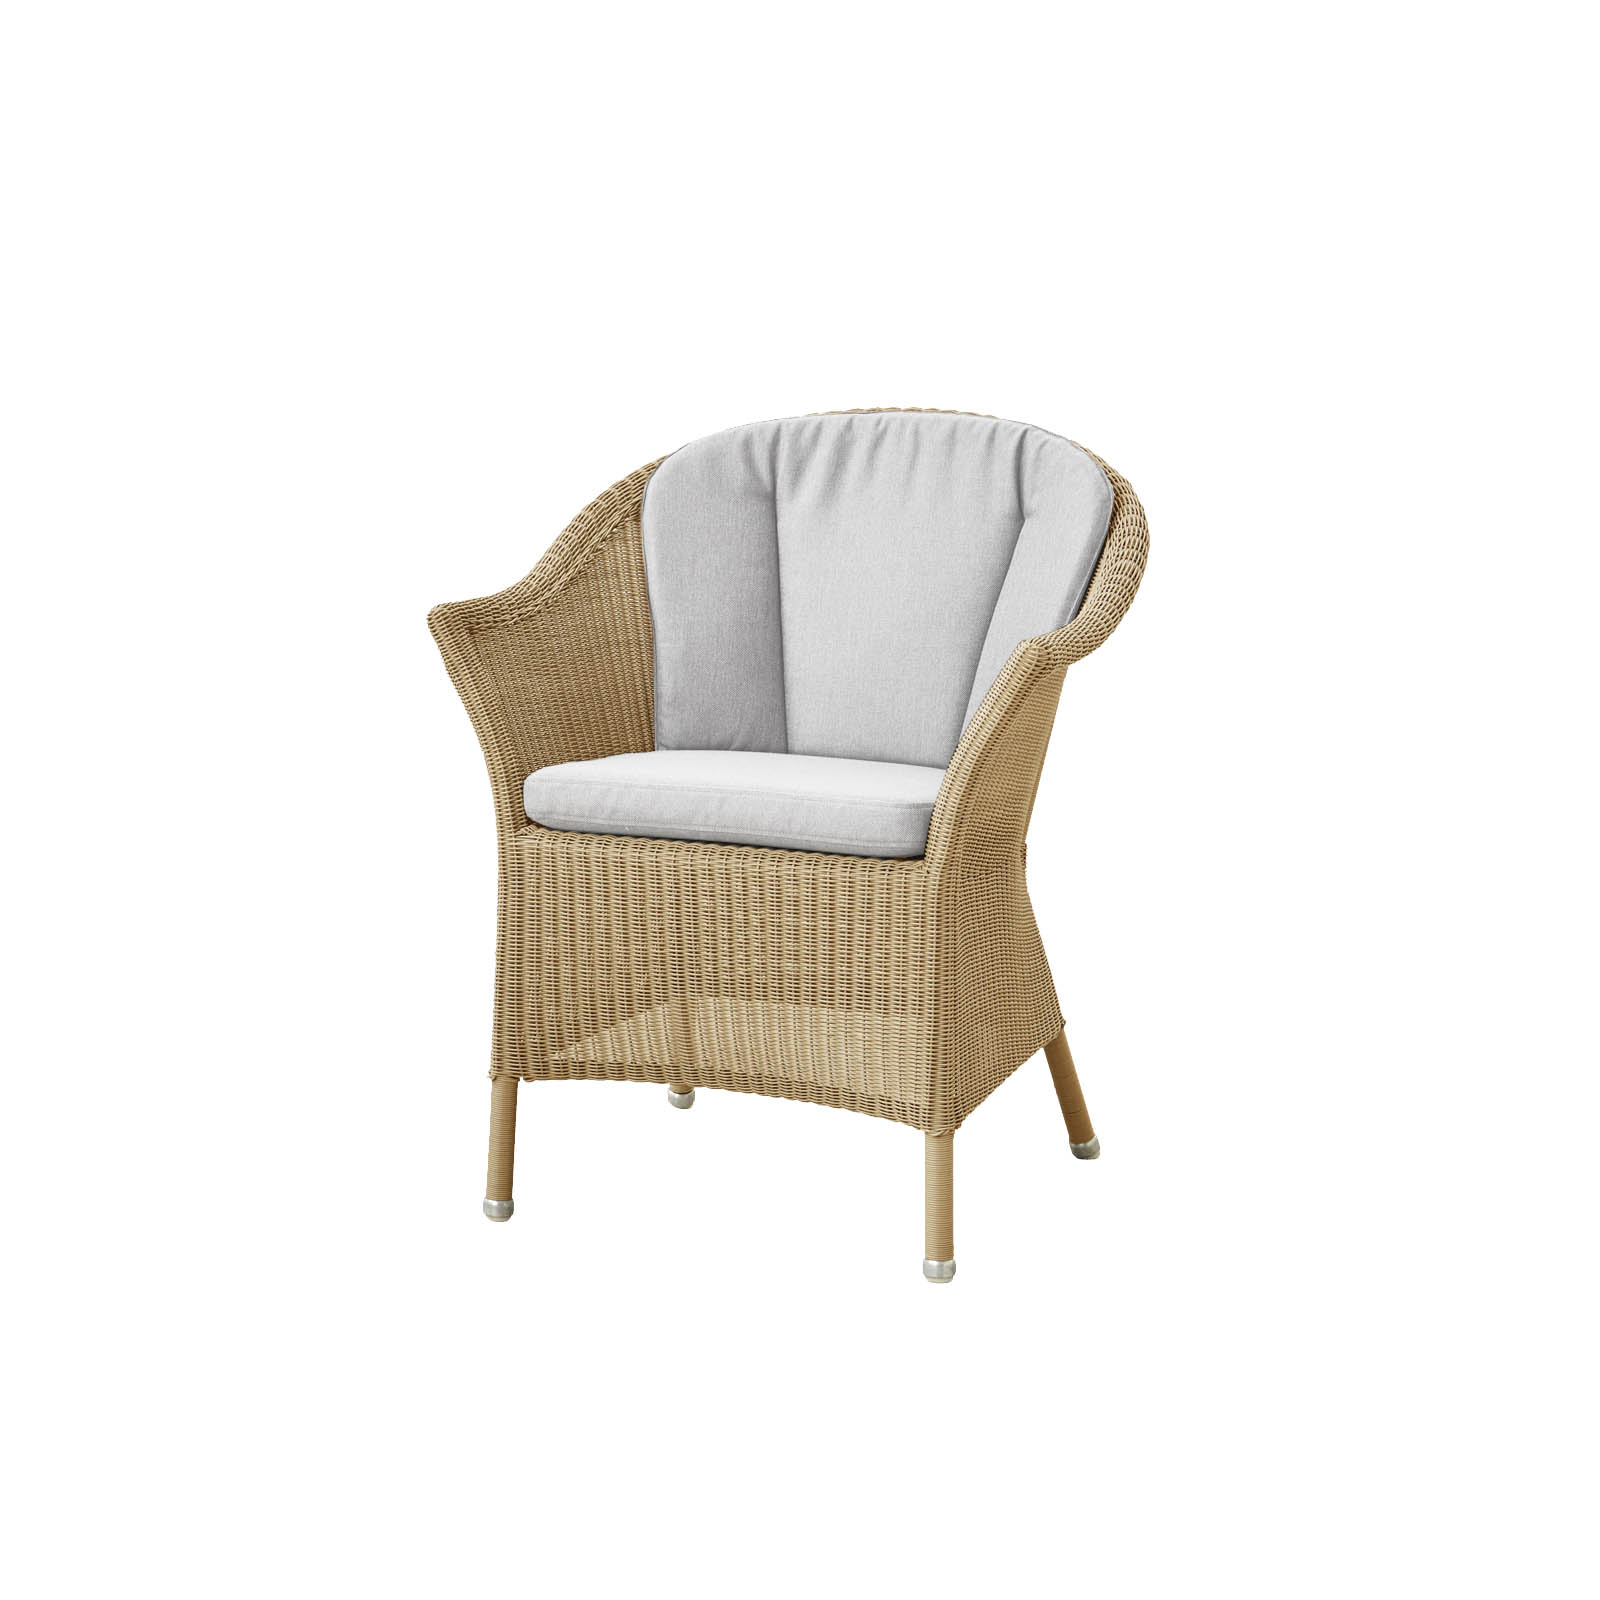 Lansing Stuhl aus Cane-line Weave in Natural mit Kissen aus Cane-line Natté in Light Grey und Kissen aus Cane-line Natté in Light Grey